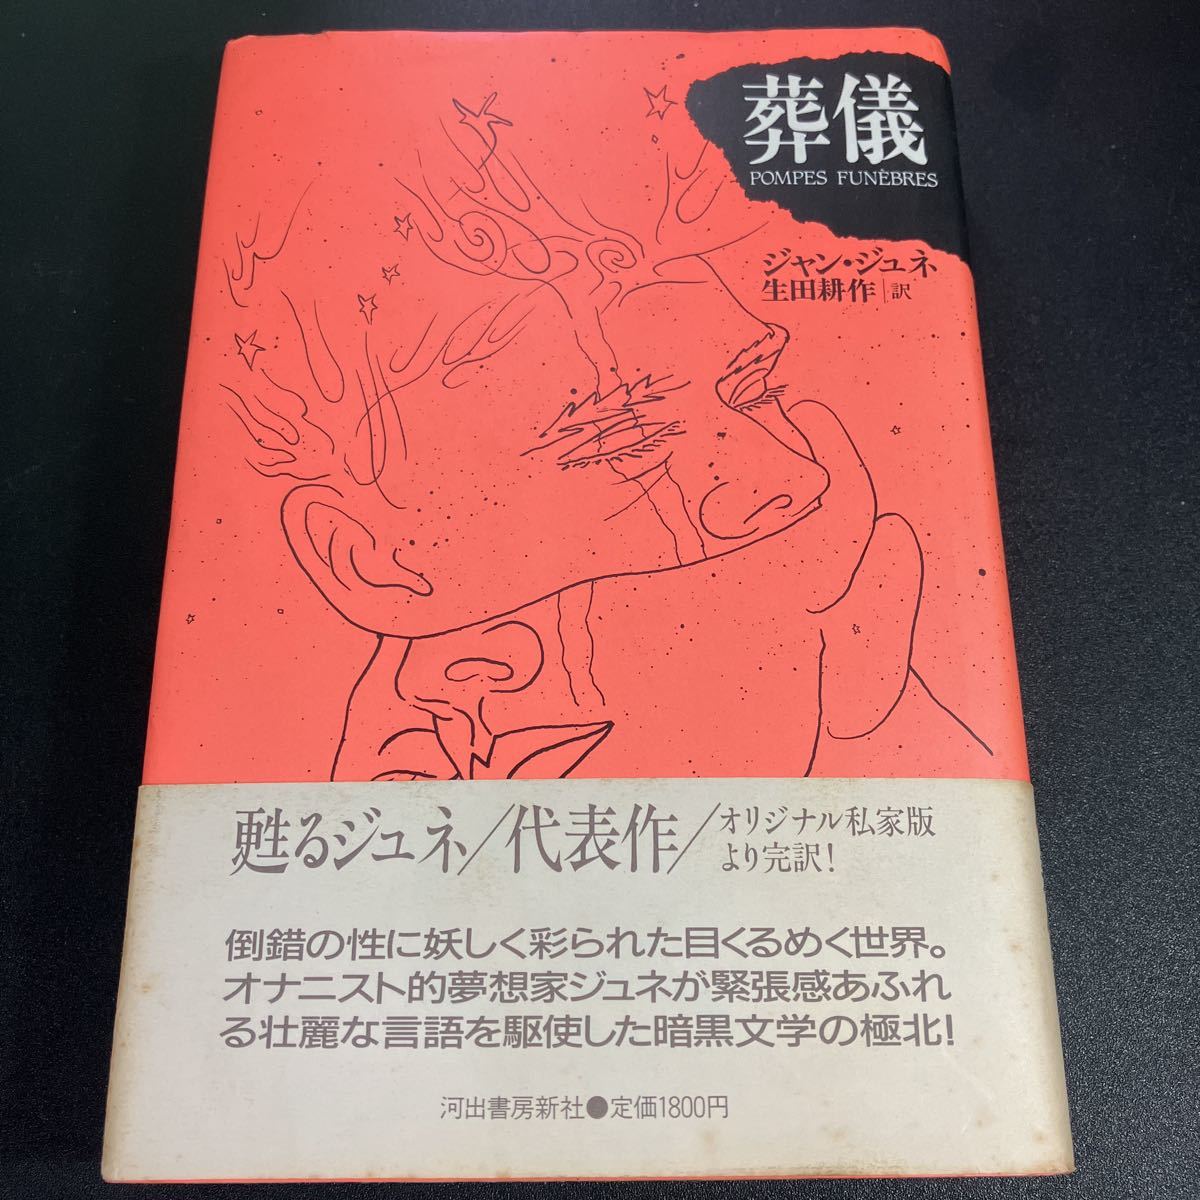 22-7-11 Jean *june[ похороны ] Ikuta Kosaku перевод Kawade книжный магазин новый фирма 1987 год первая версия с поясом оби 